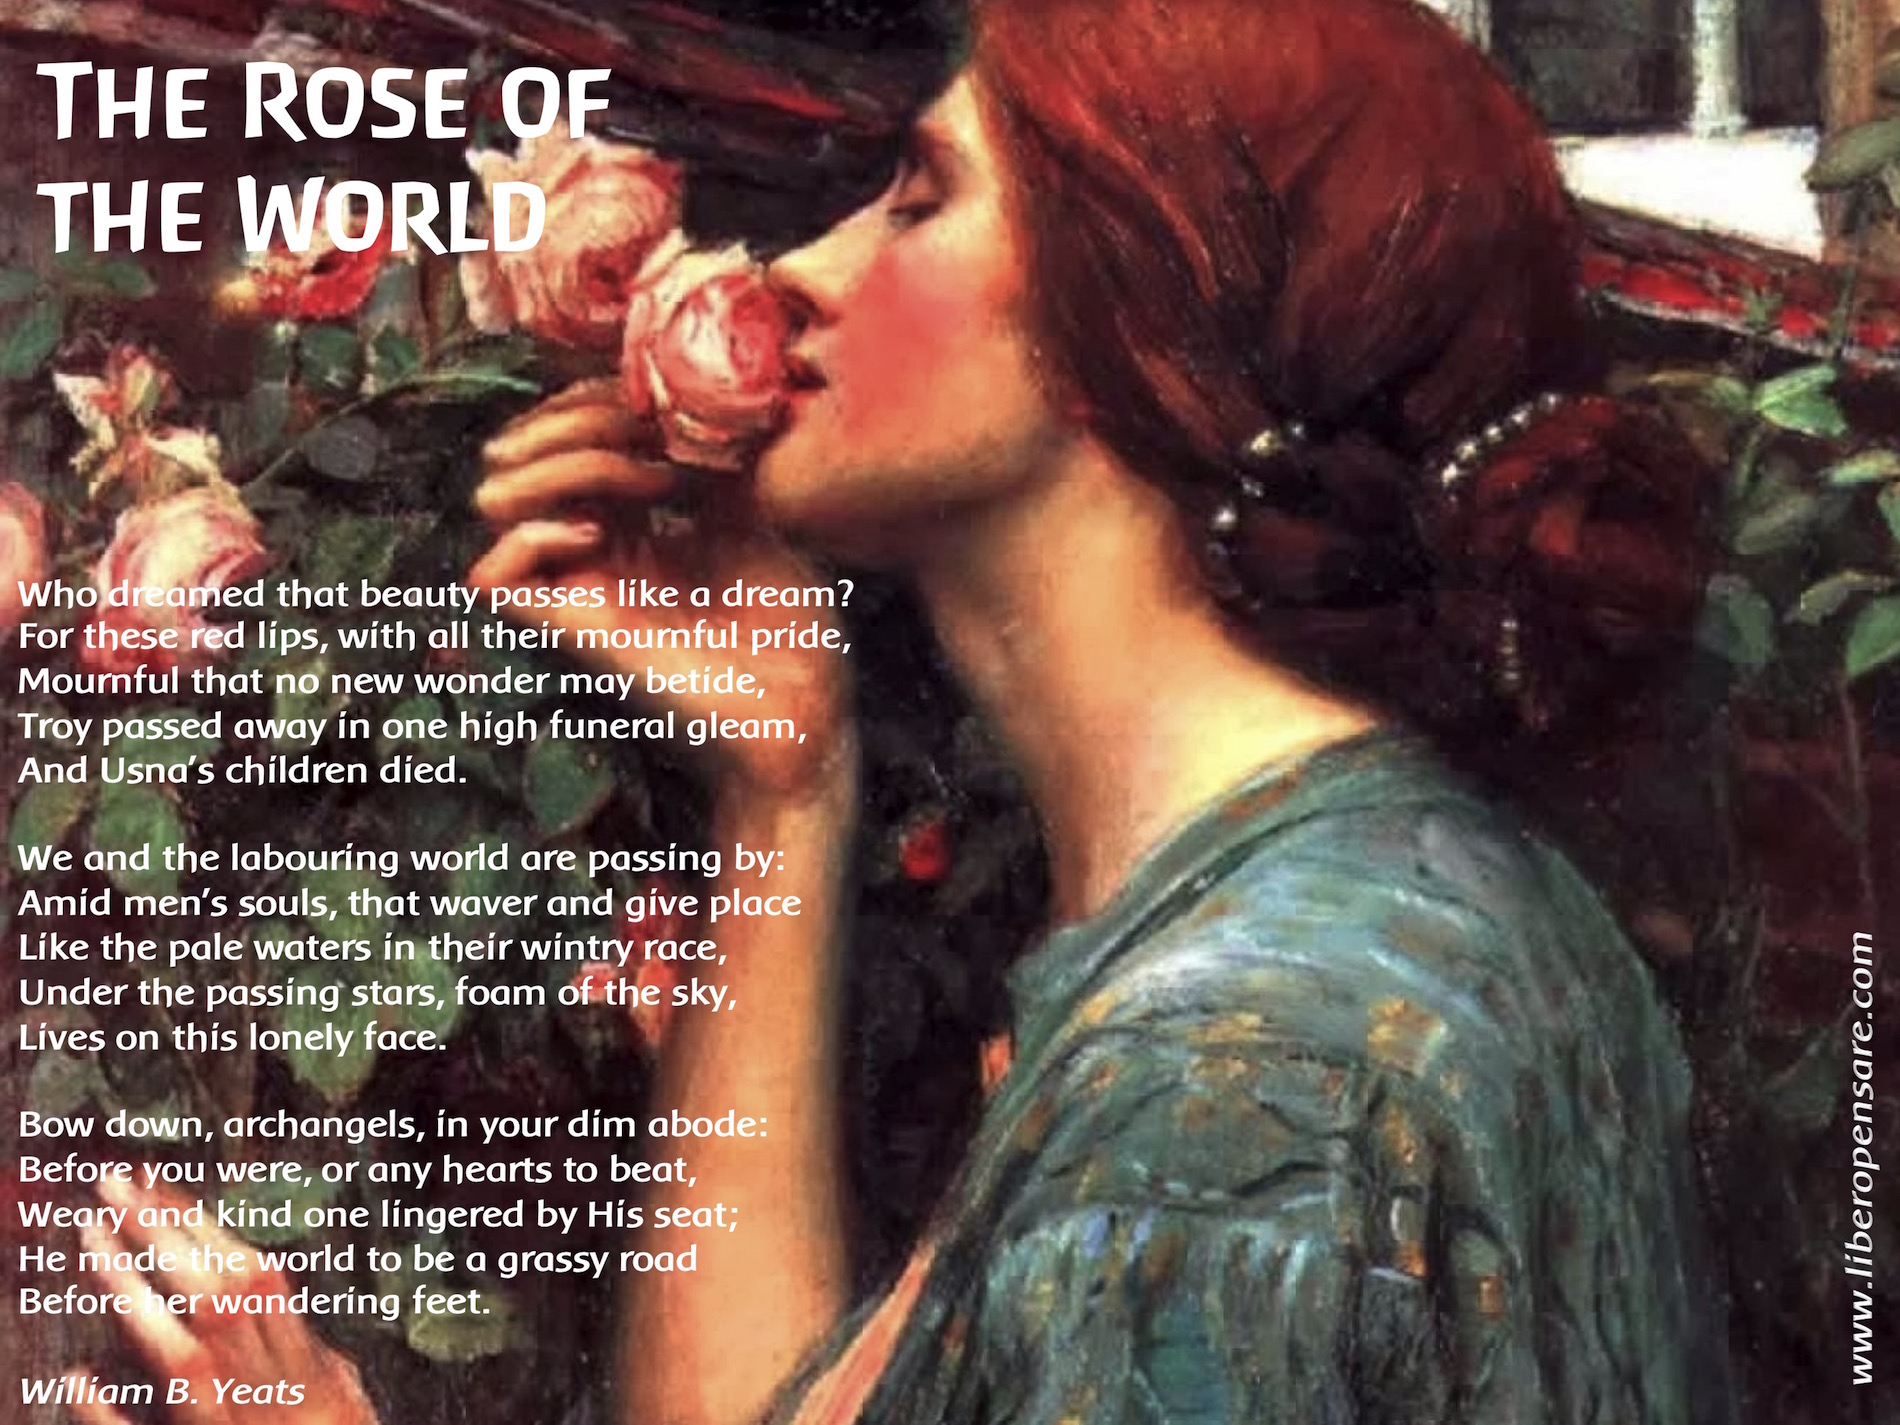 The_Rose_of_the_World_William_B.Yeats.jpg